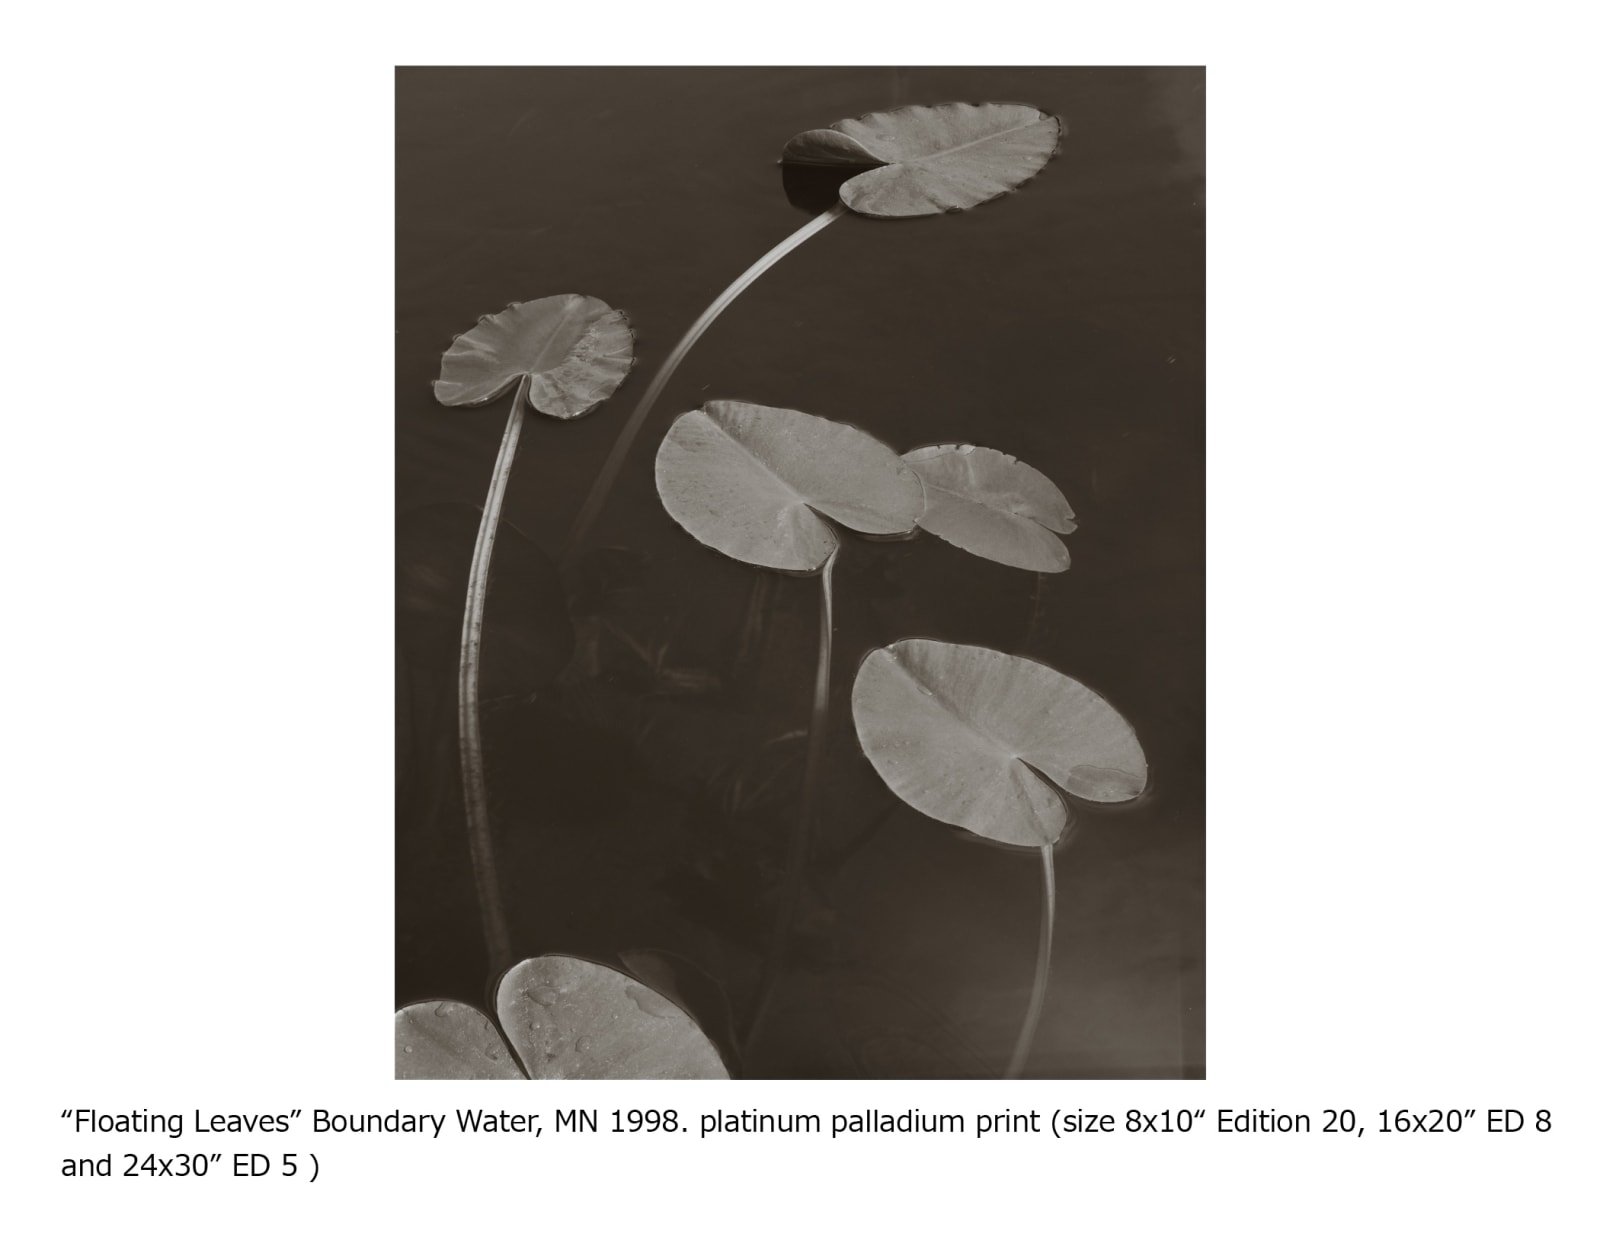 Koichiro Kurita, Floating Leaves, Boundary Water Canoe Area, Minnesota, 1999